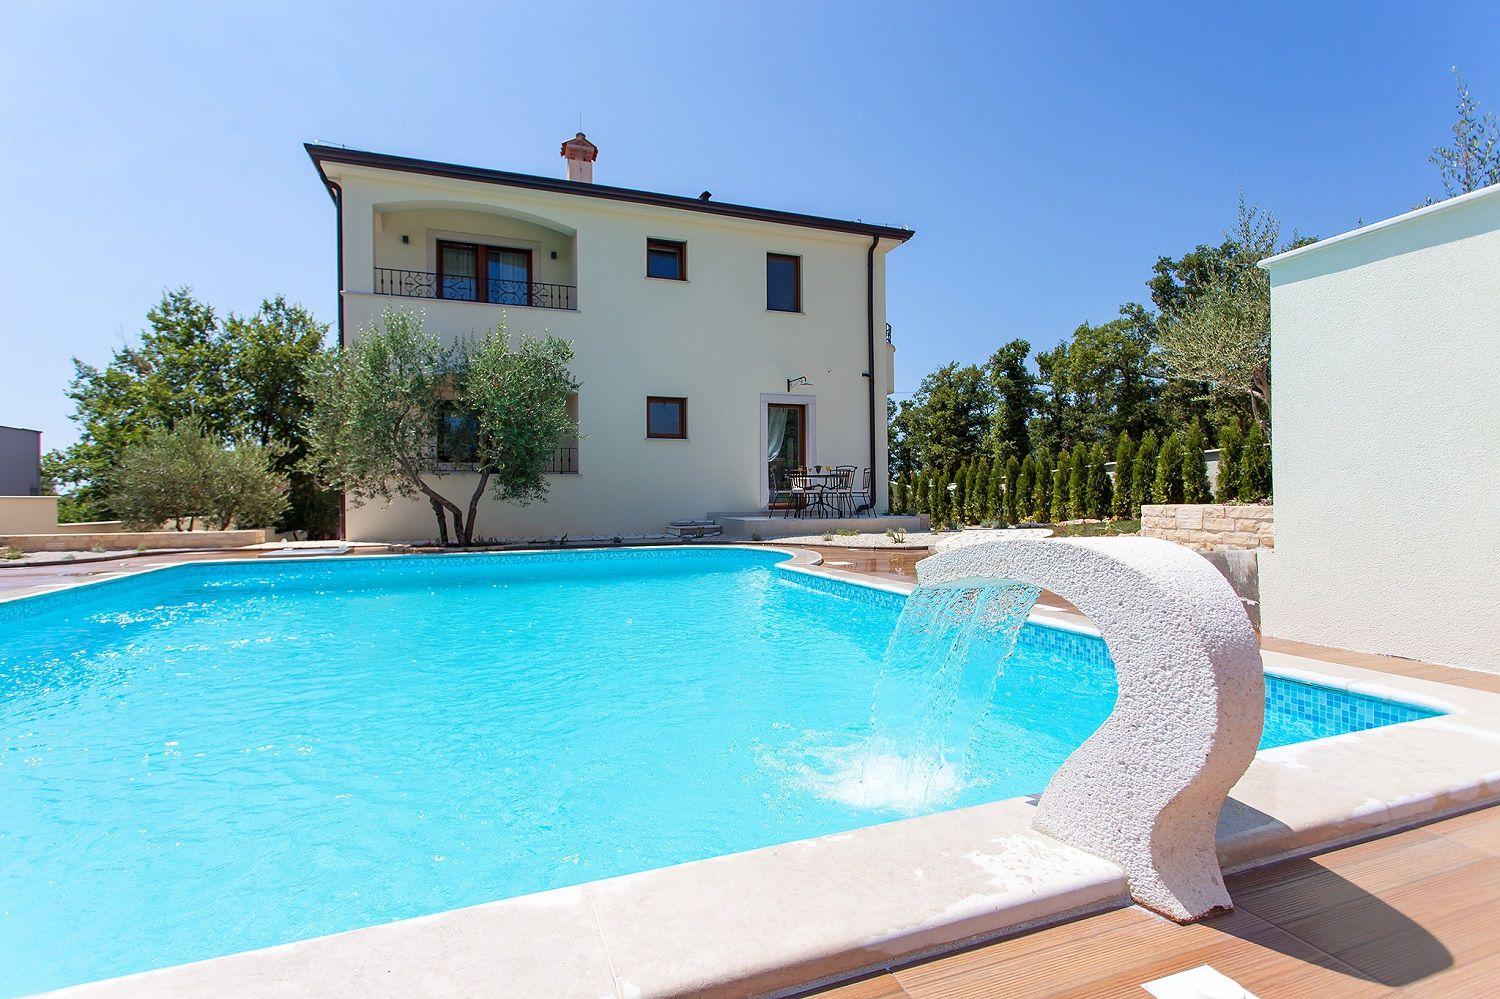 Ferienwohnung Birikina 2 mit Pool bei Porec, 2-4 P Ferienwohnung in Istrien